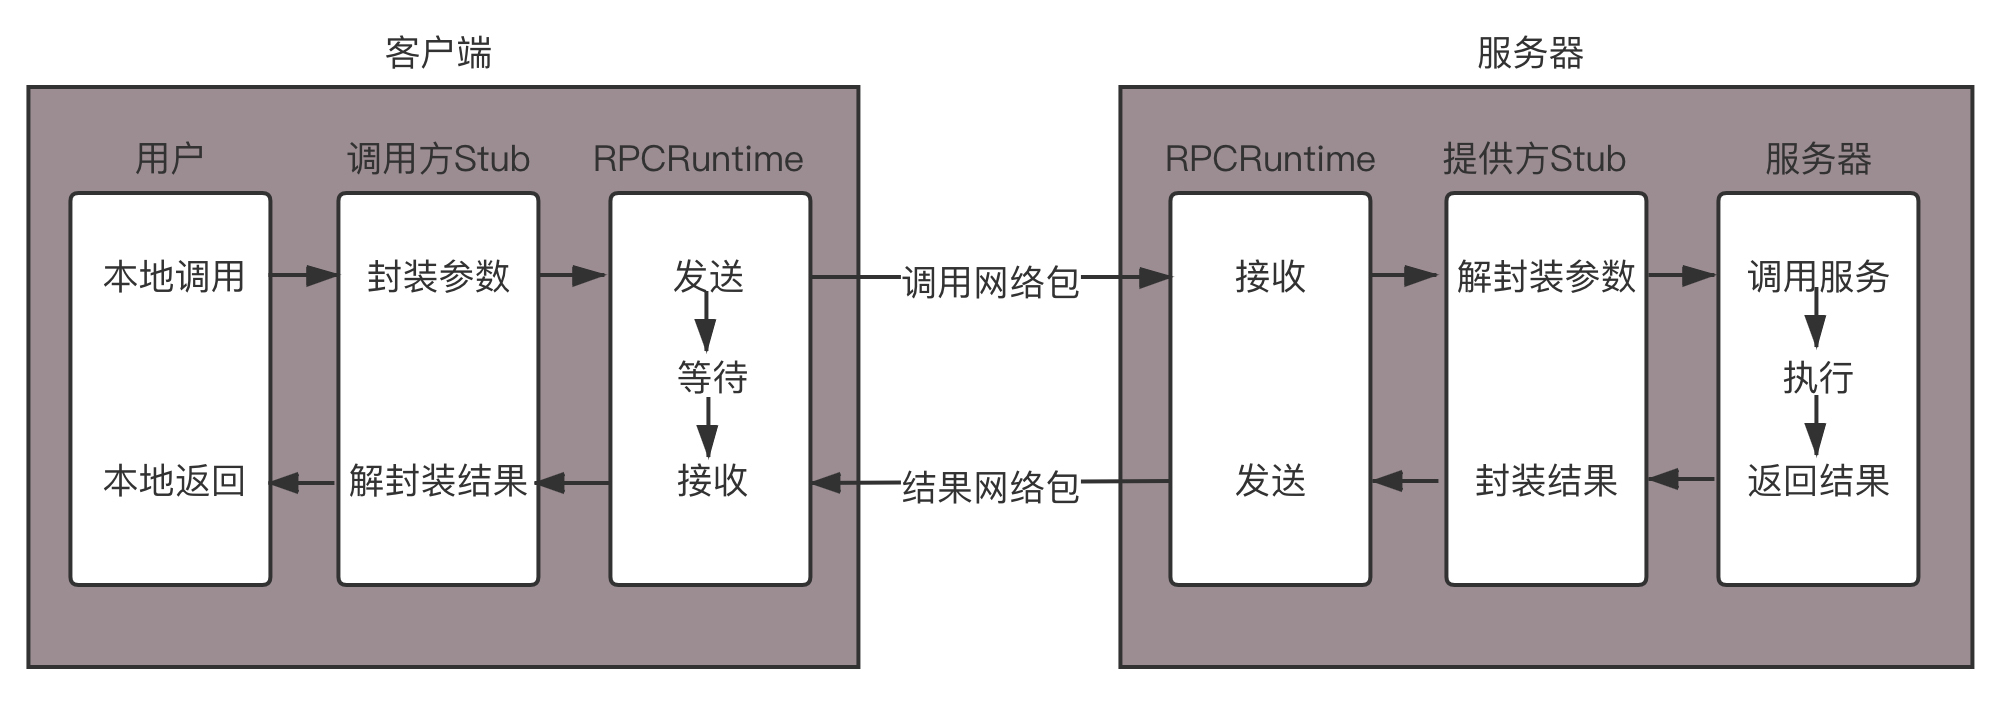 RPC协议综述_网络协议